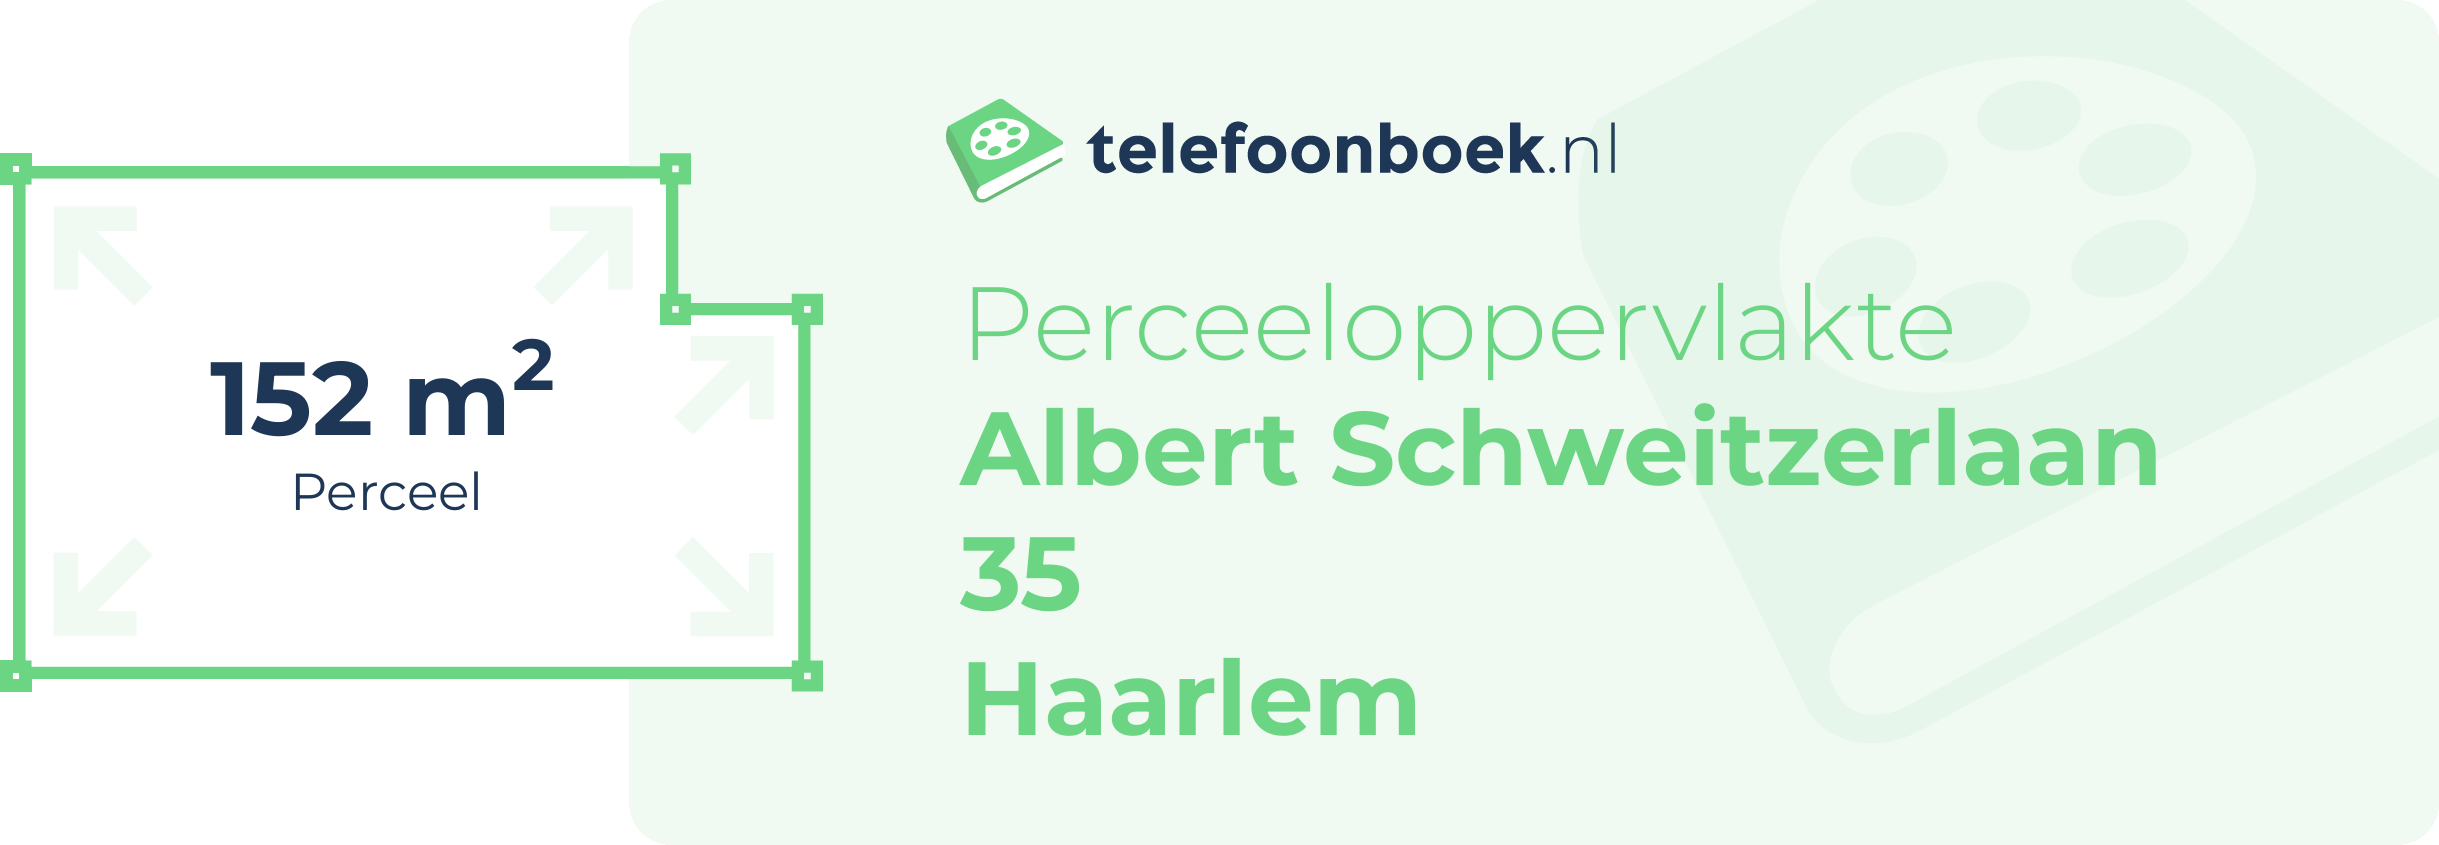 Perceeloppervlakte Albert Schweitzerlaan 35 Haarlem